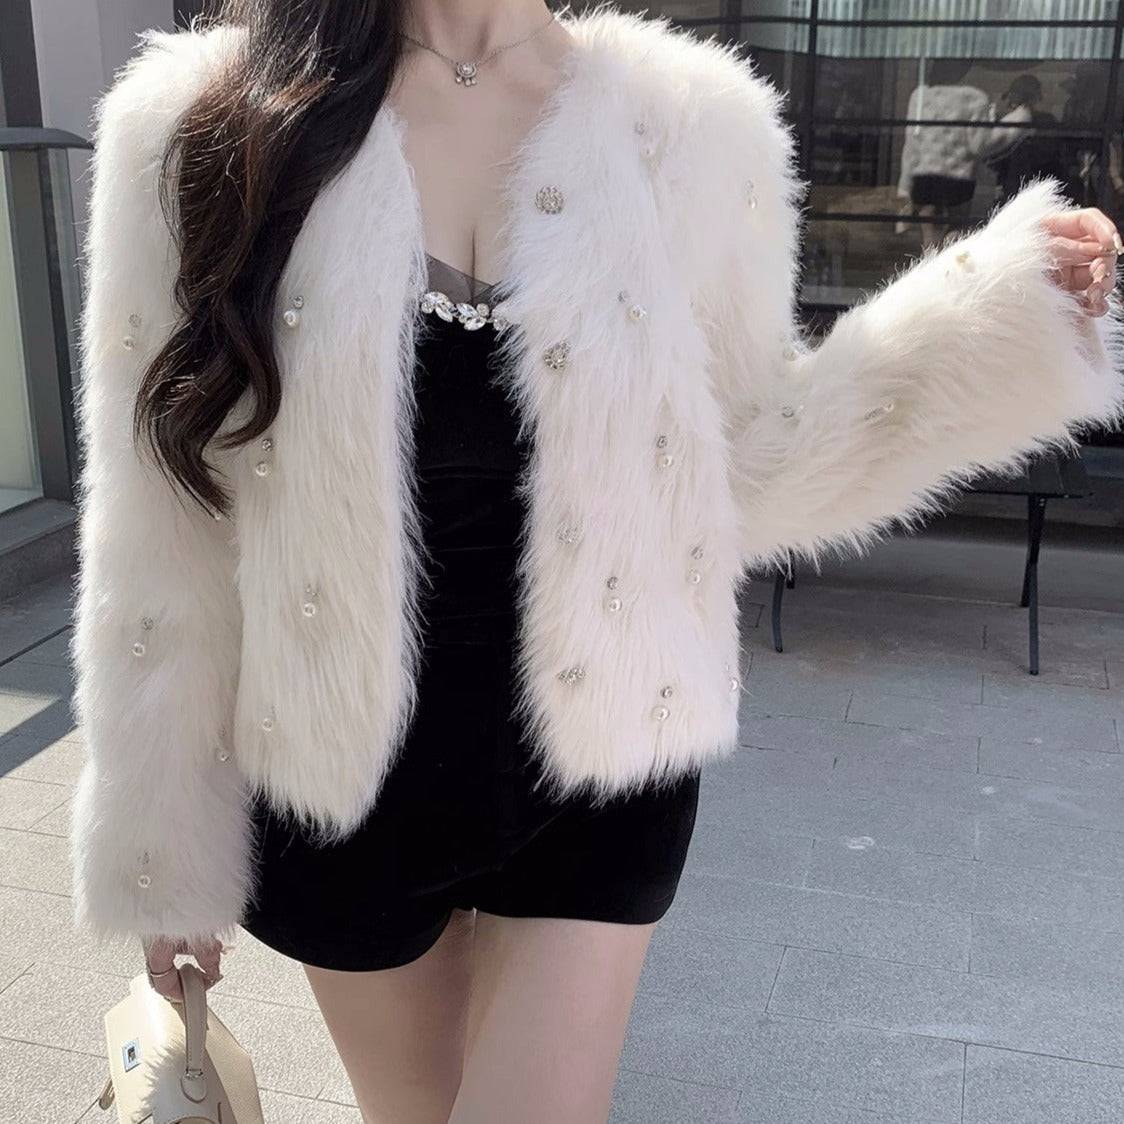 Georgia Pearl Design Faux Fur Coat - Hot fashionista